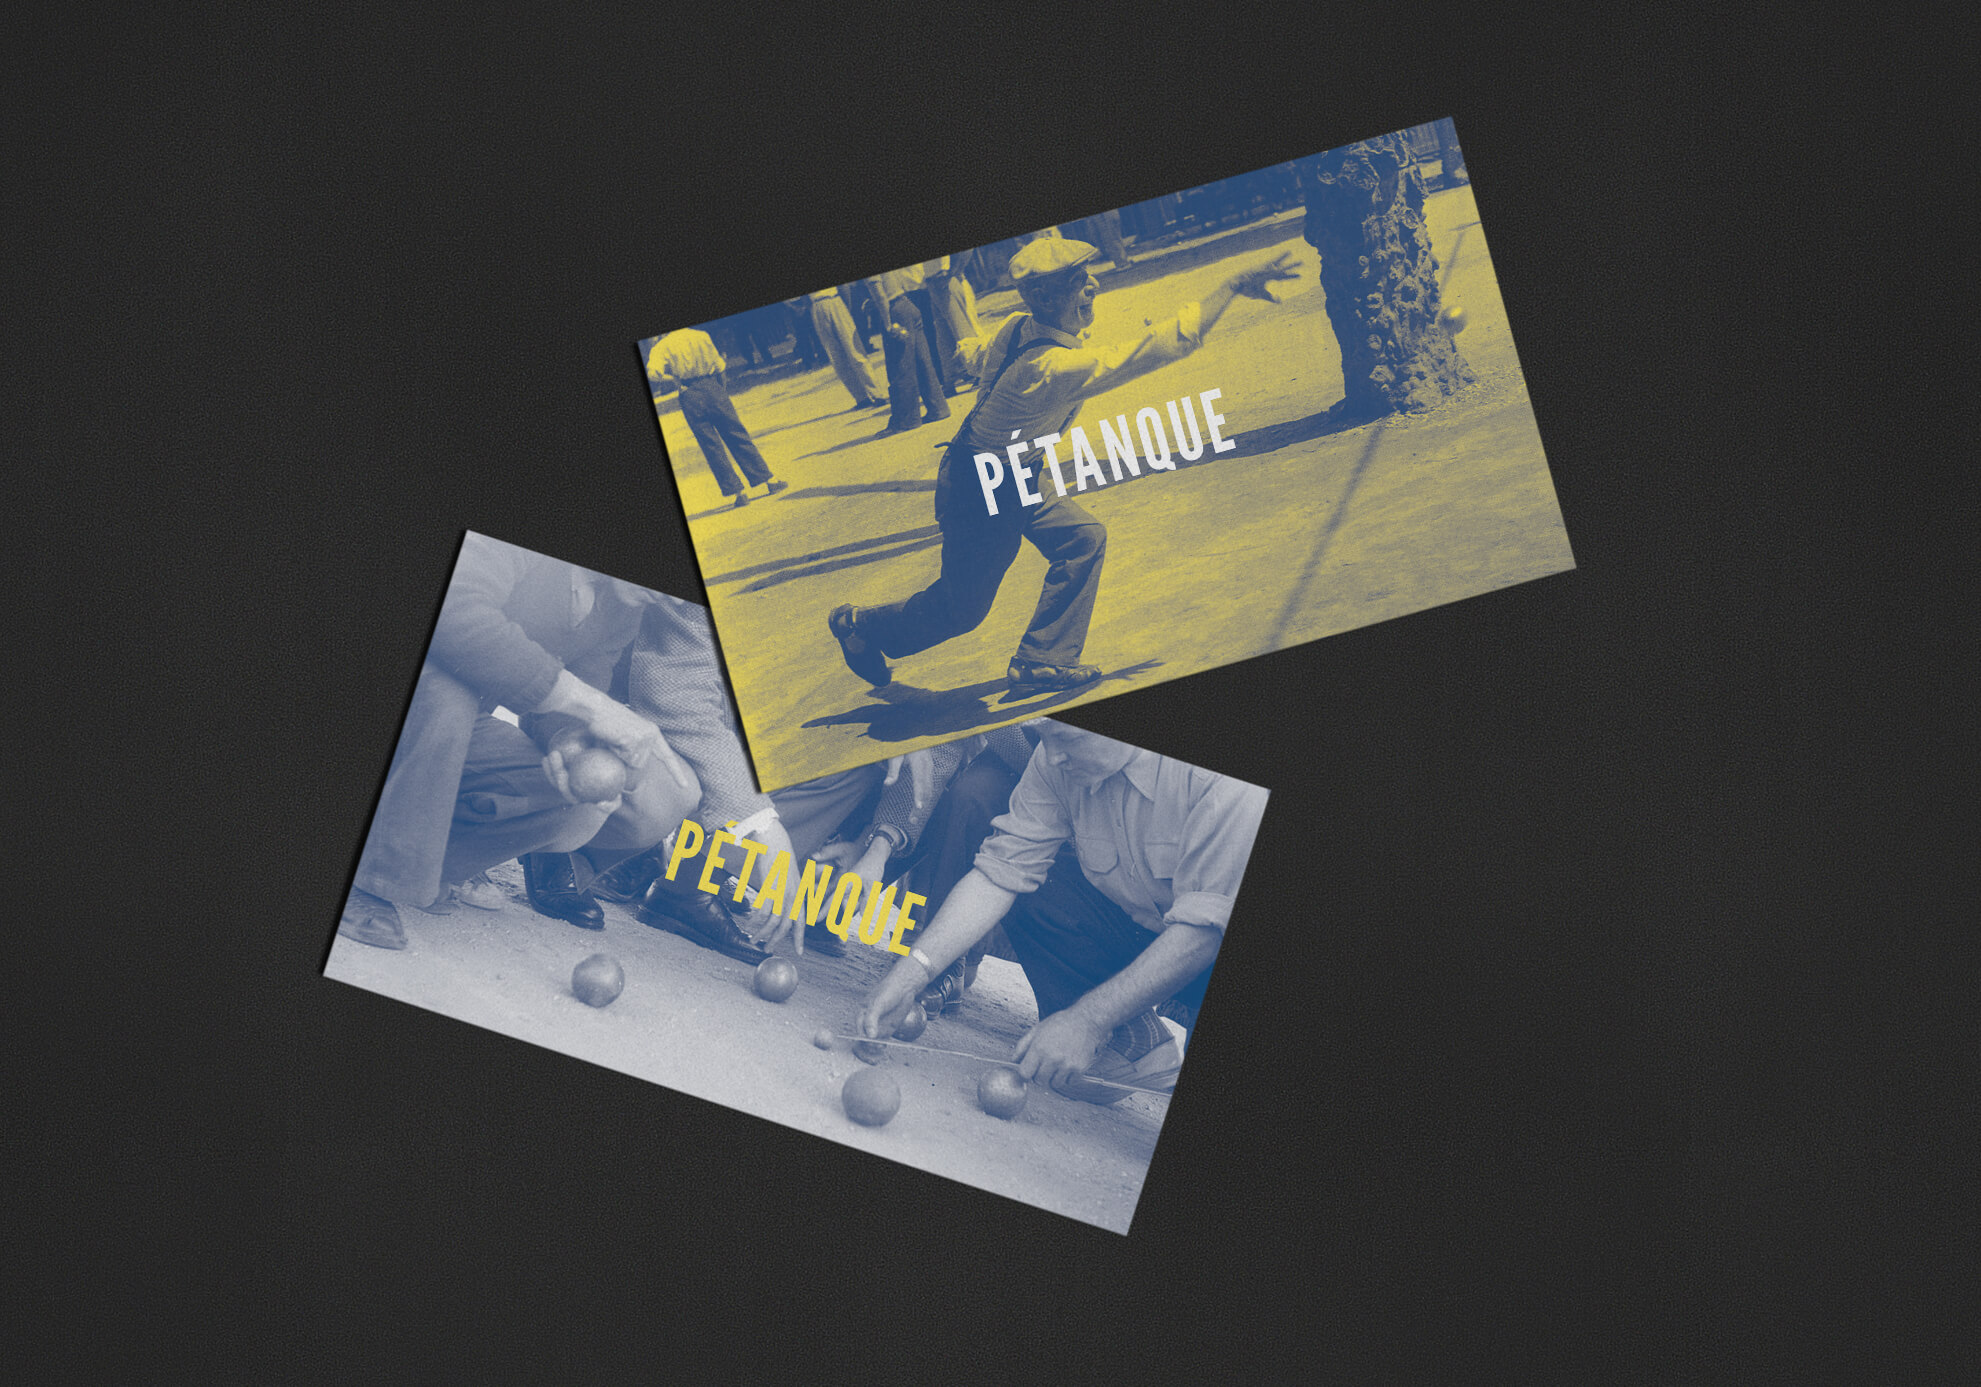 Cartes postales avec des images d'archive de pétanque en jaune et bleu.